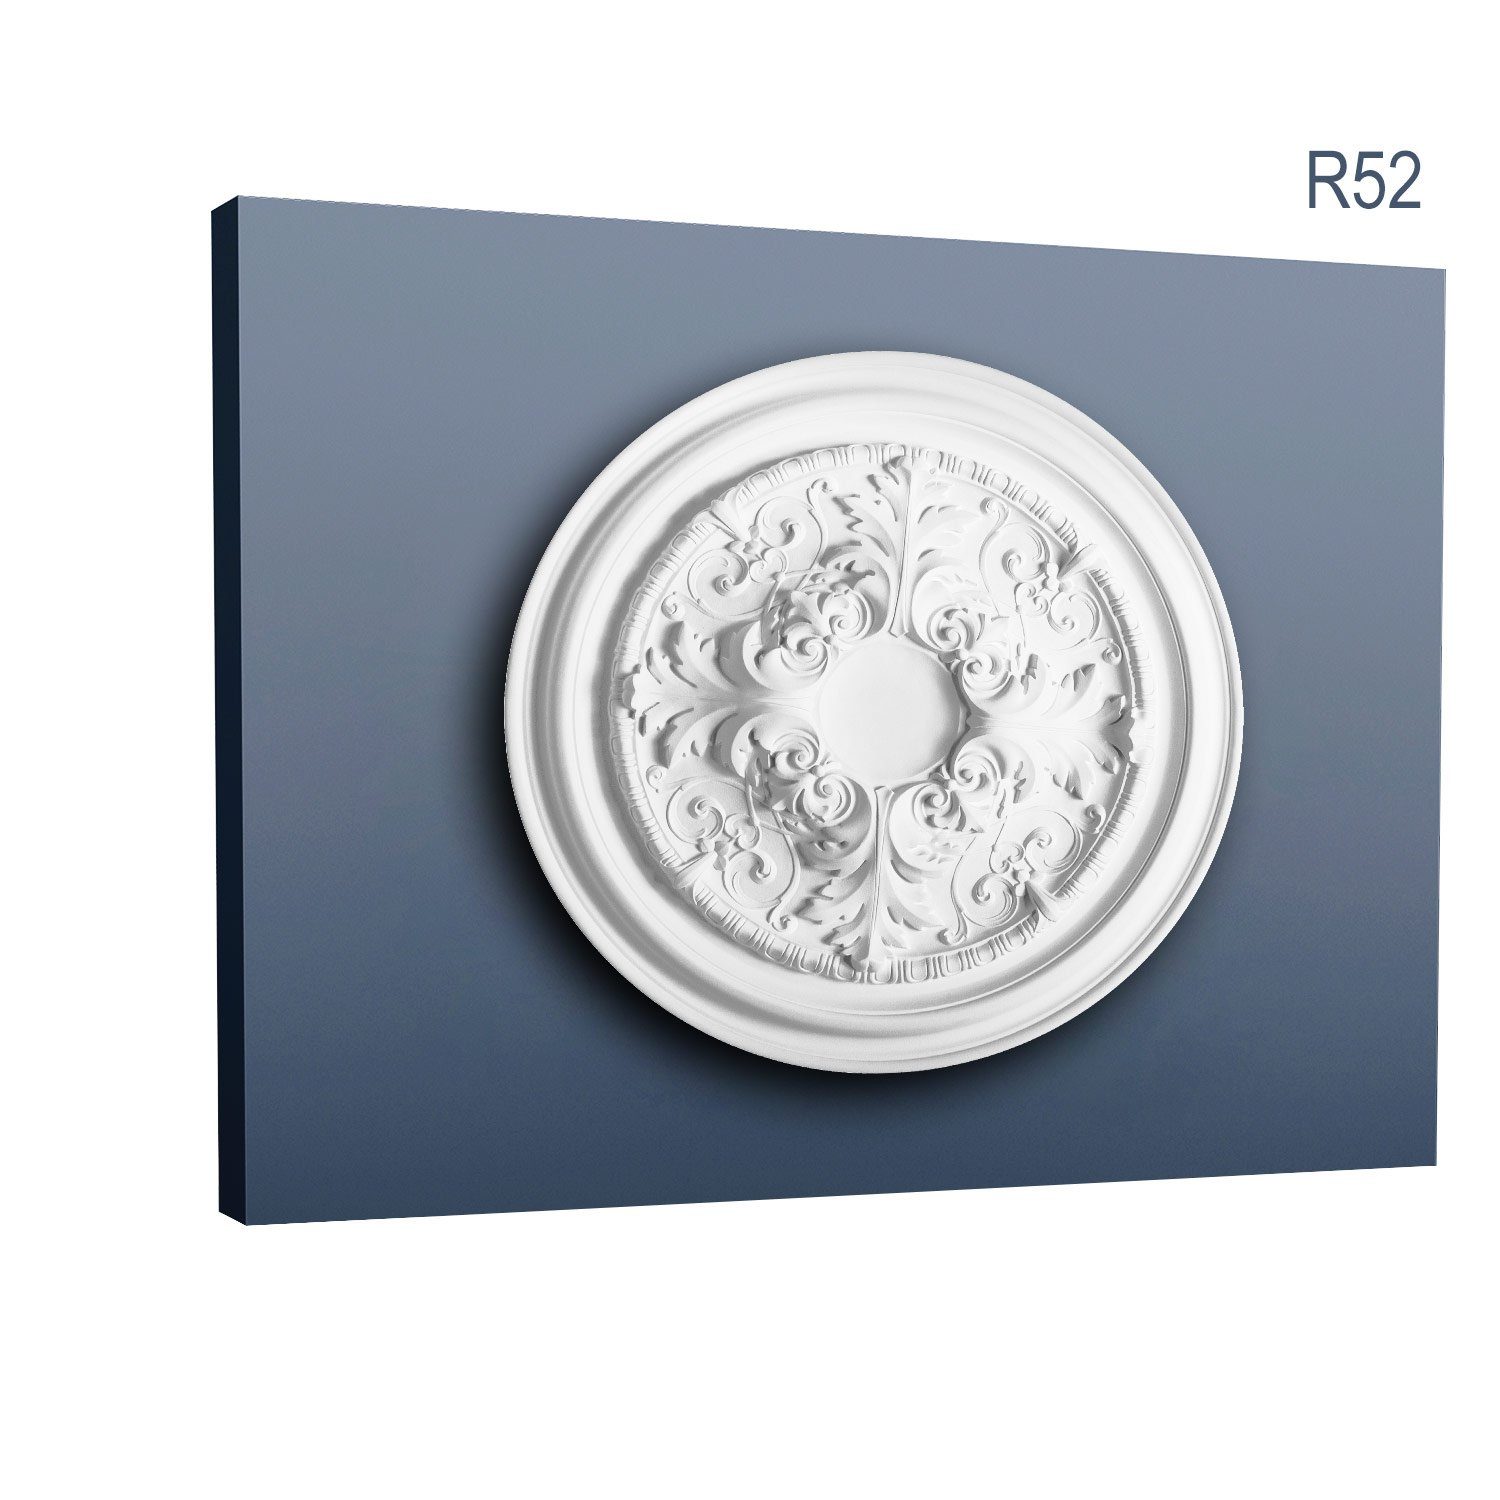 1 R52 Durchmesser Medallion, vorgrundiert, weiß, Deckenelement, cm), Decken-Rosette Deckenrosette, St., Zierelement, Stil: Barock Orac Rokoko (Rosette, Decor Stuckrosette, / 69,5